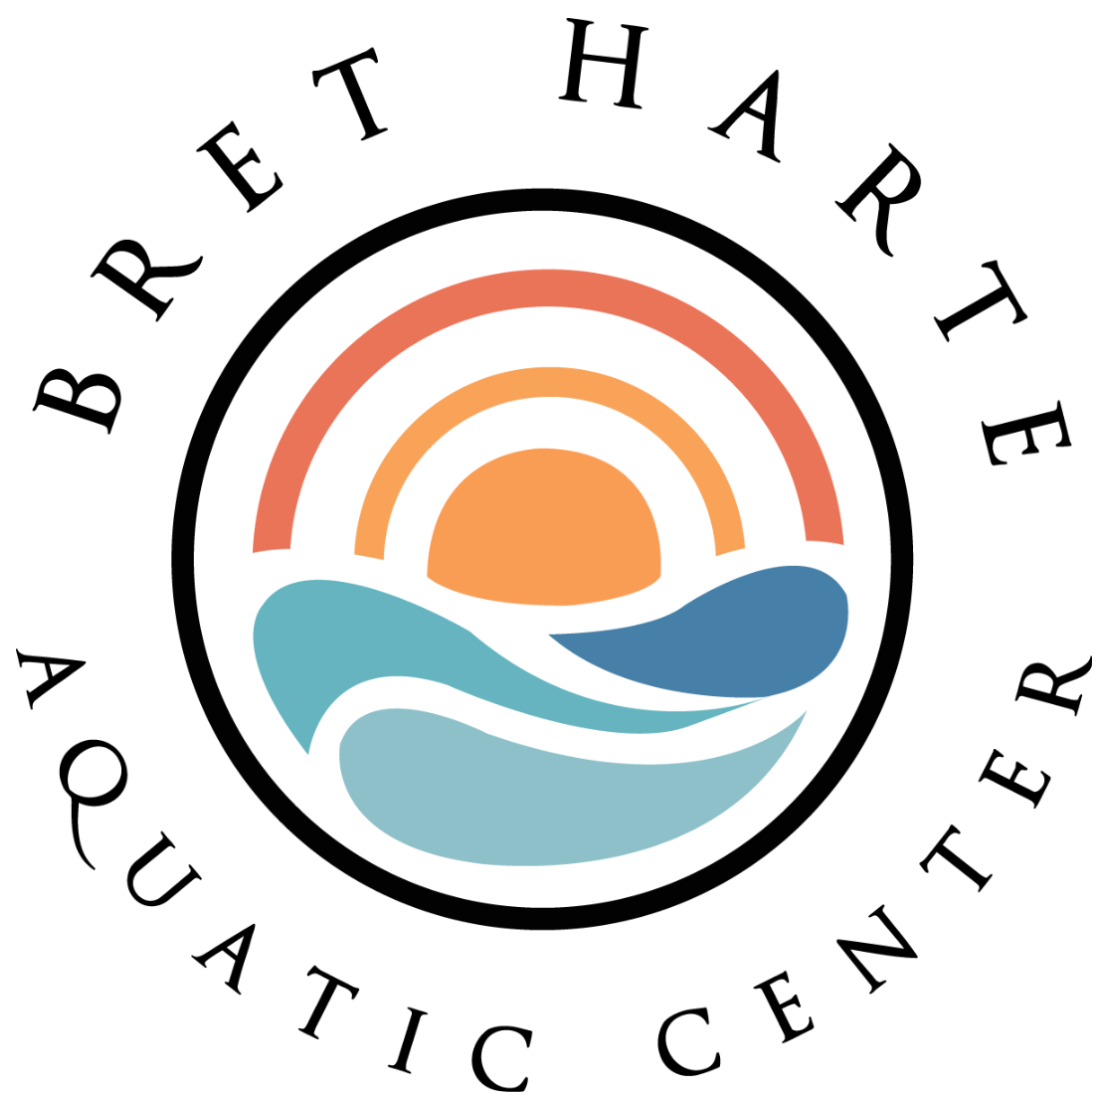 Bret Harte Aquatic Center logo